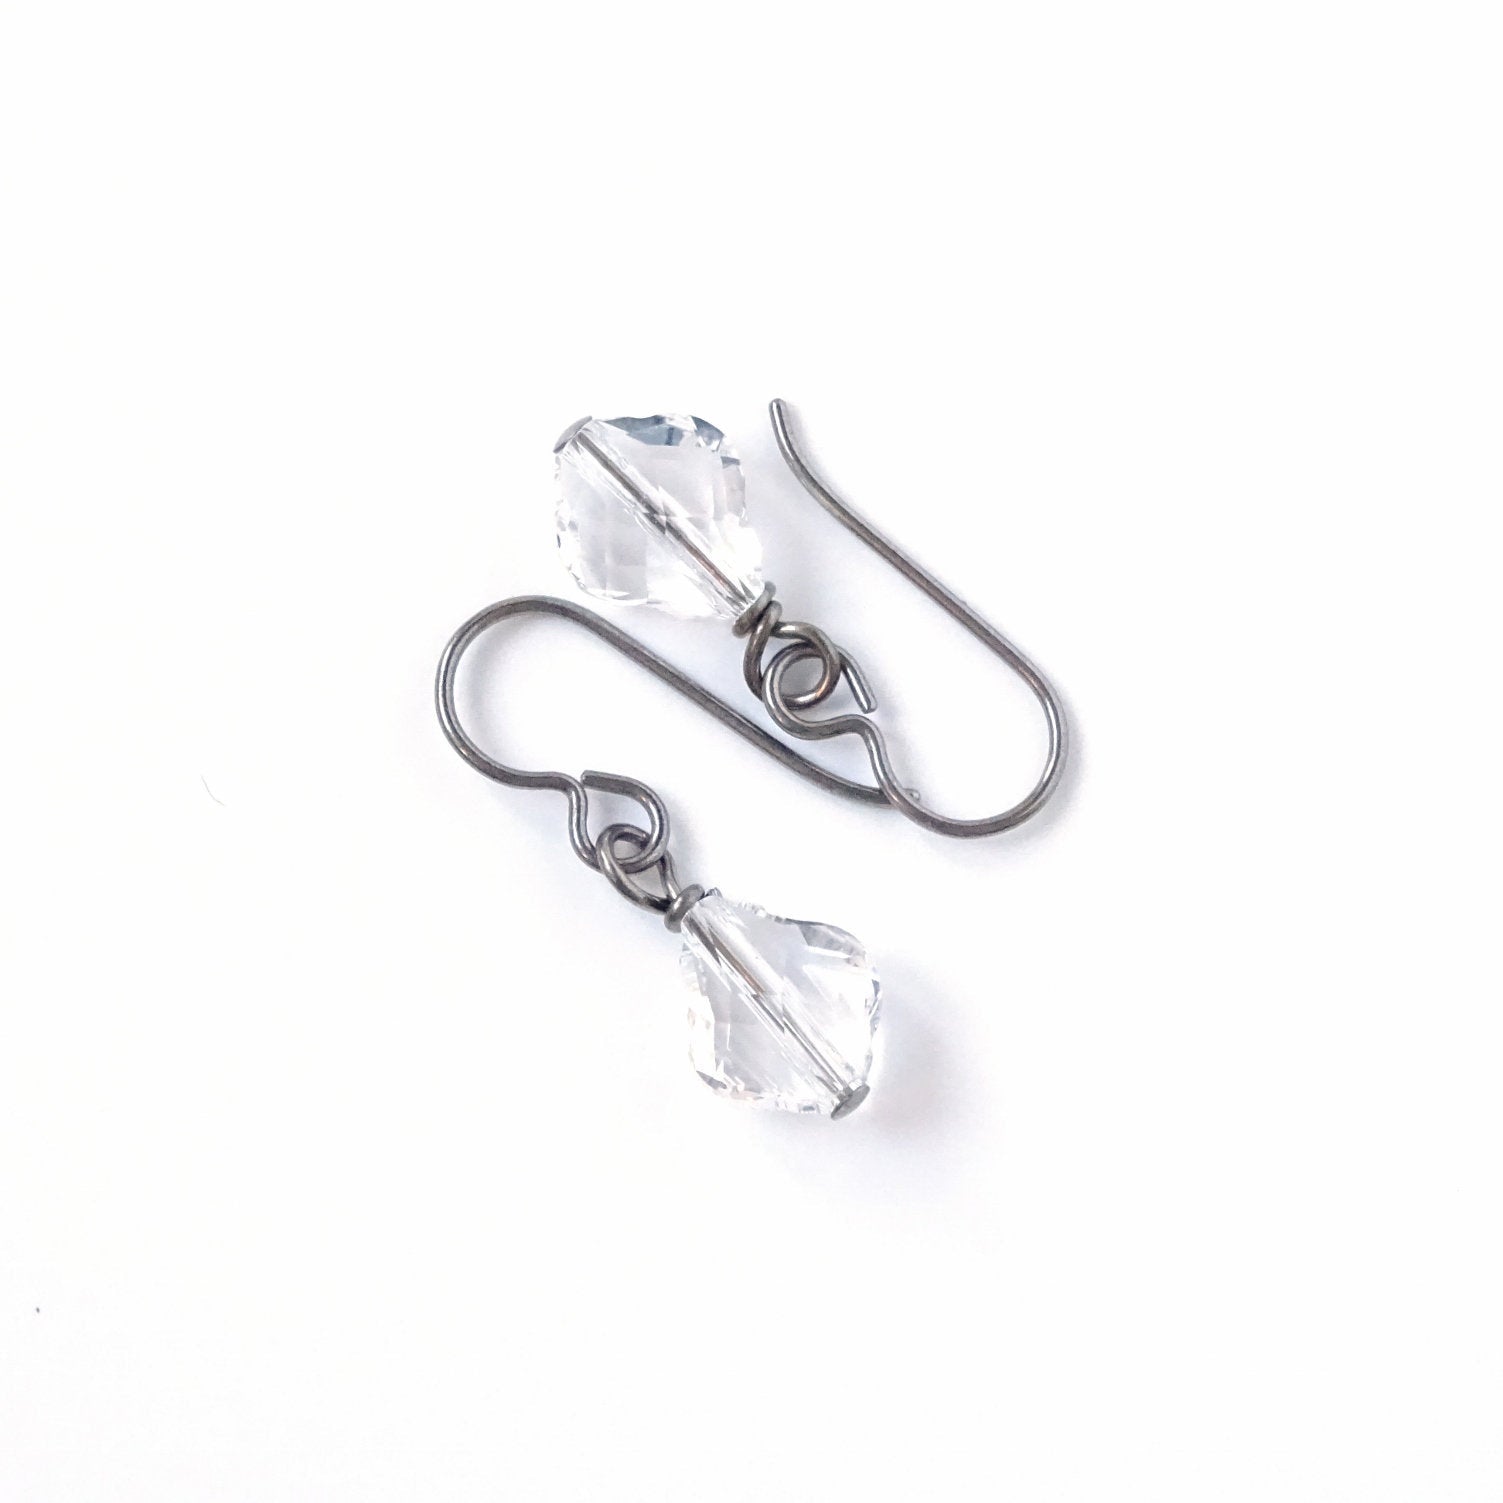 Clear Baroque Crystal Titanium Earrings, Hypoallergenic Nickel Free Niobium Earrings for Sensitive Ears